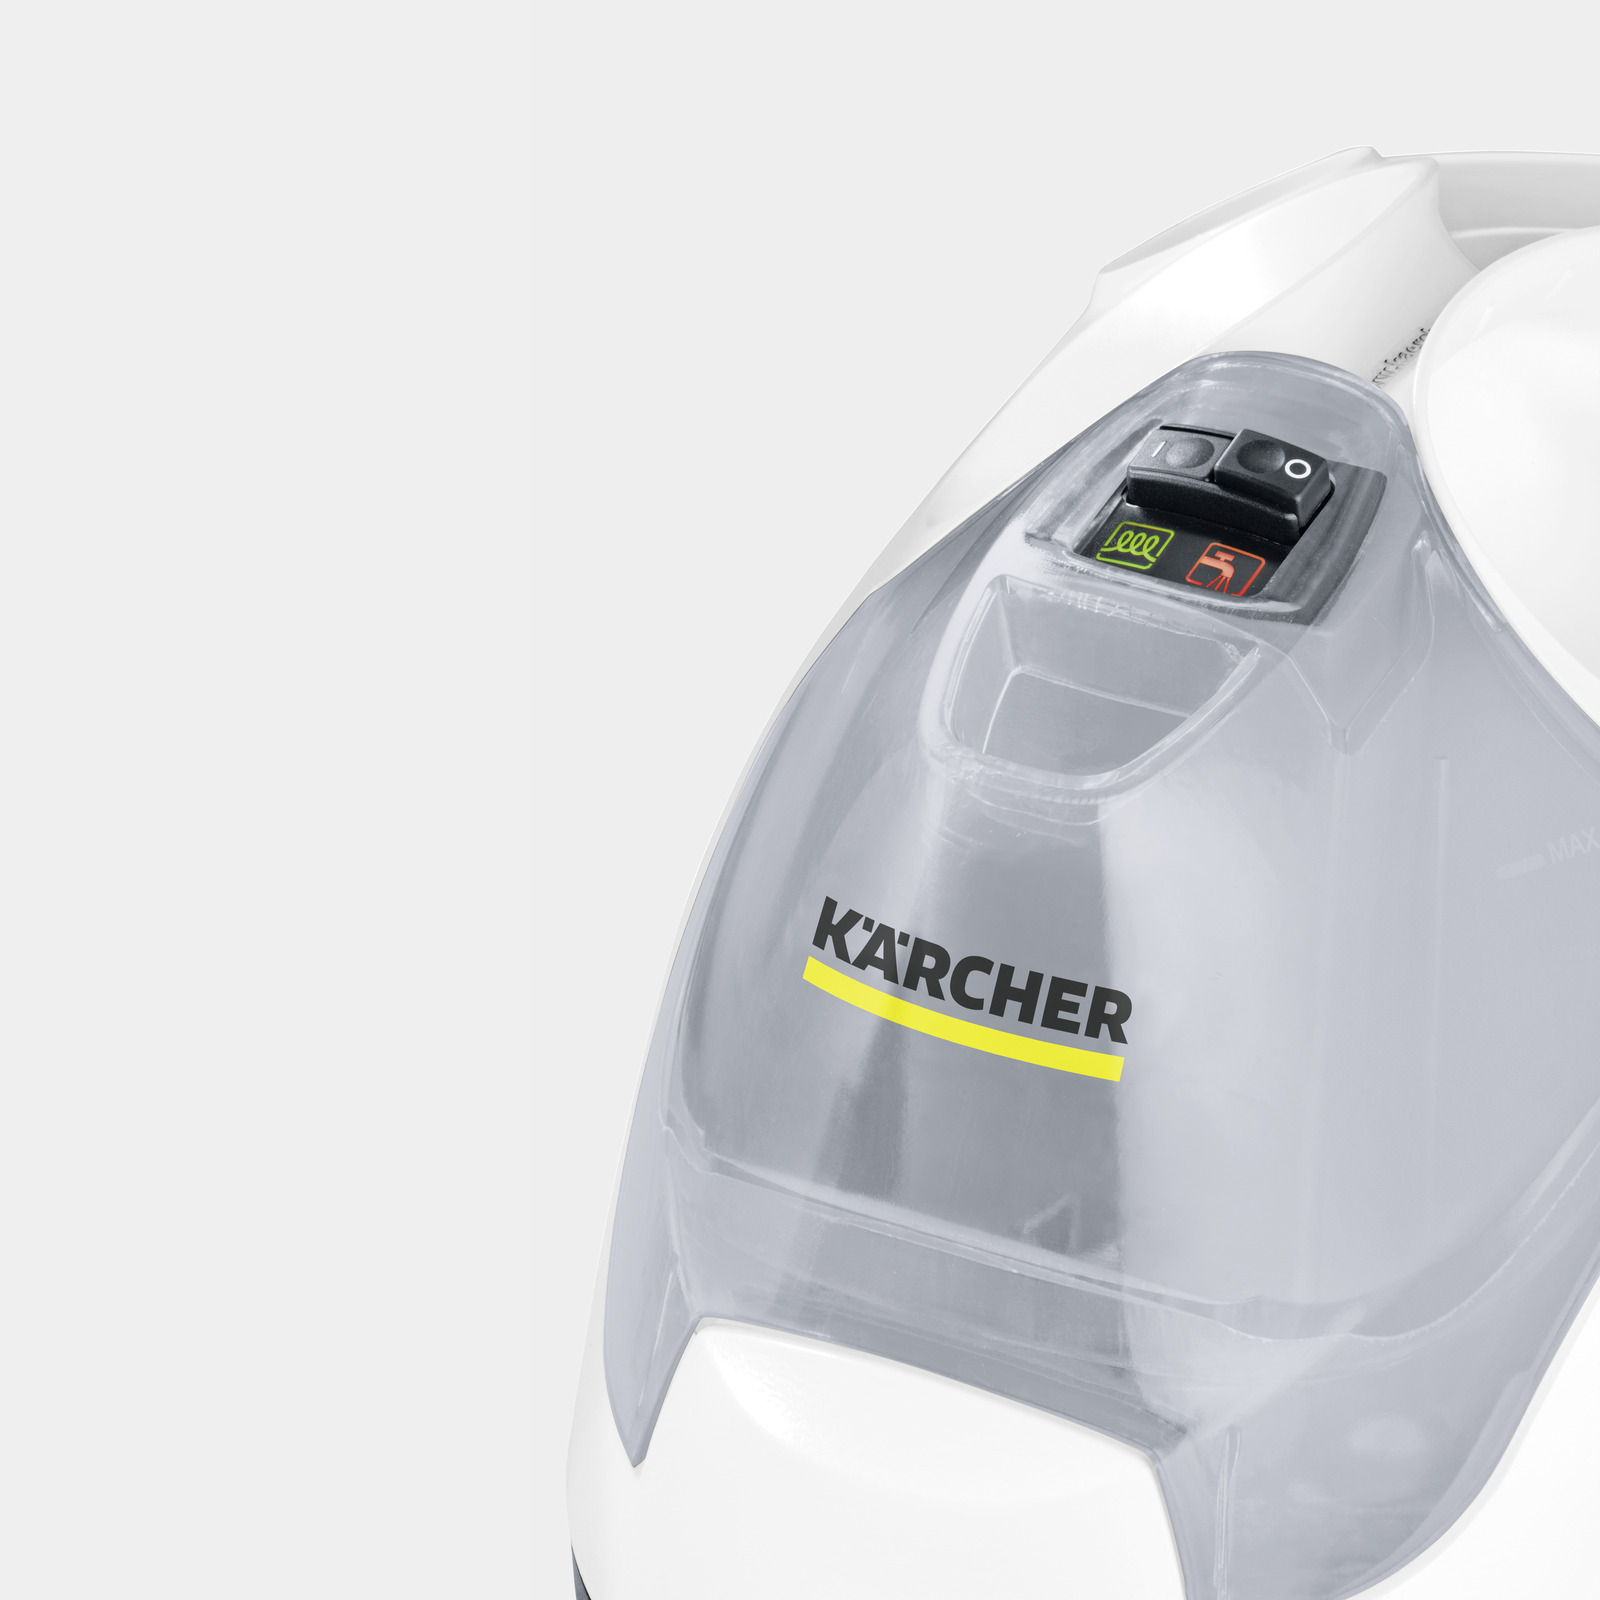 Karcher SC 4 EasyFix Dry Steam Cleaner